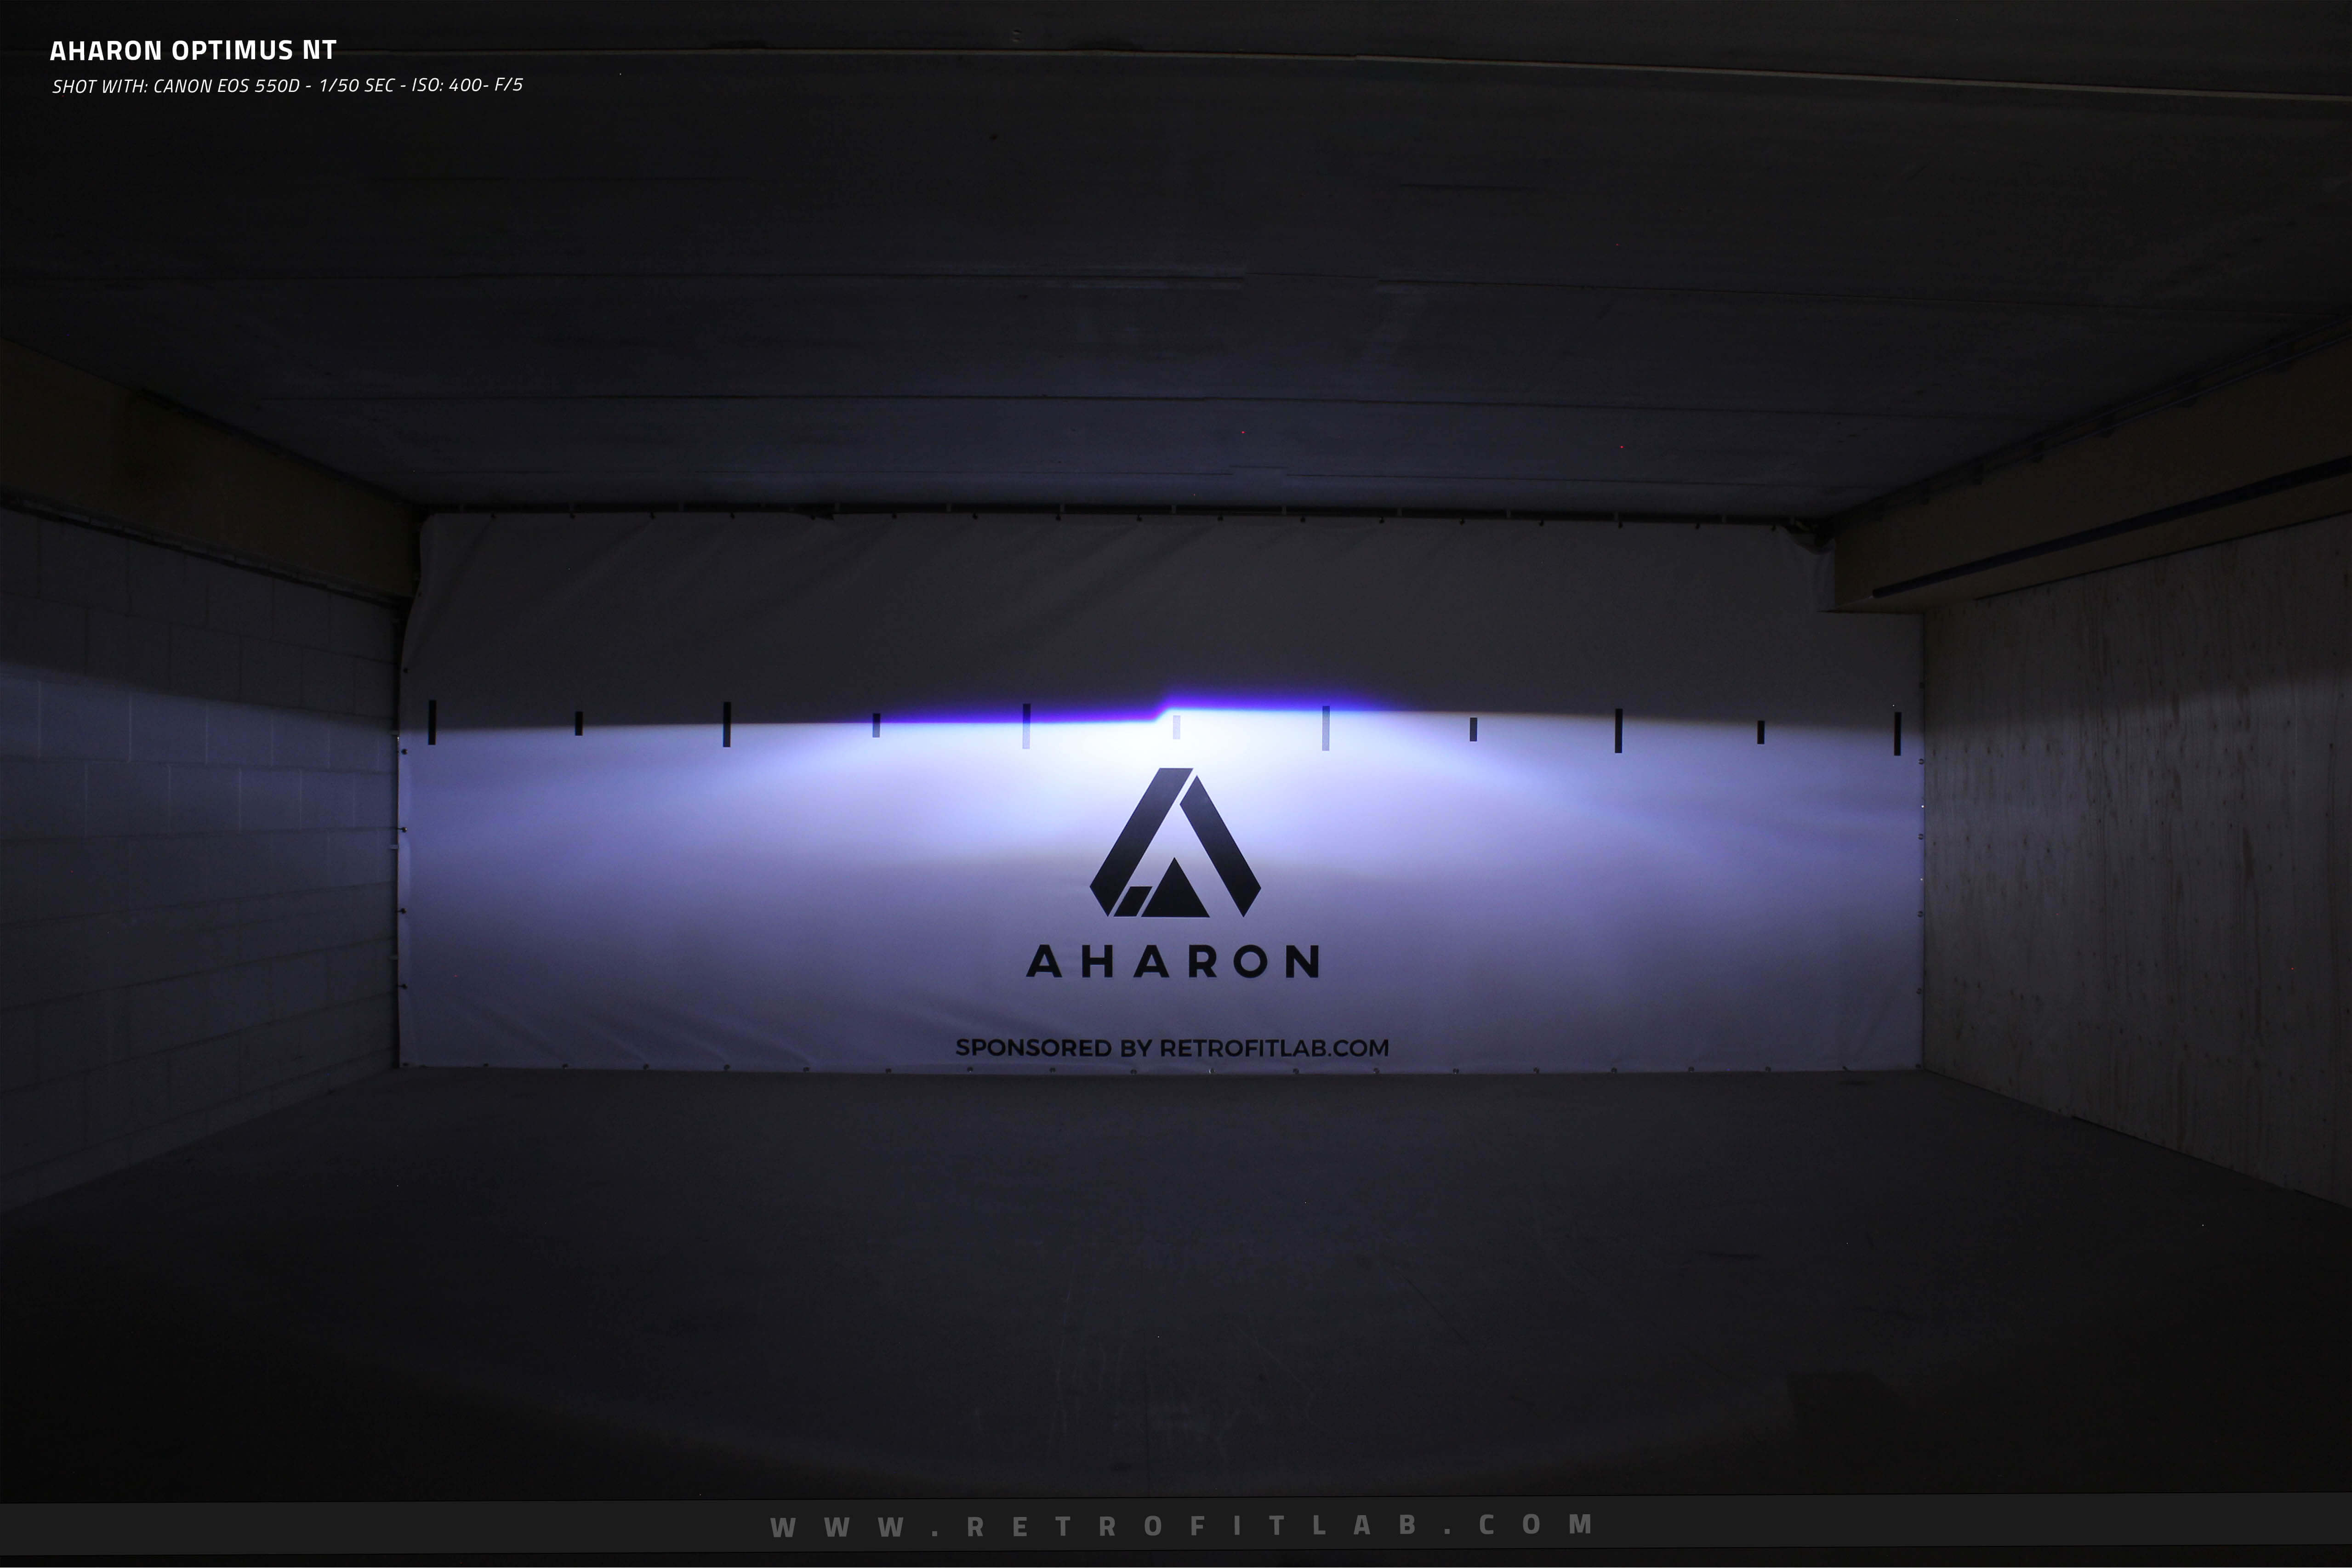 Aharon Optimus NT - Bi-xenon projectors Hella design - Retrofitlab